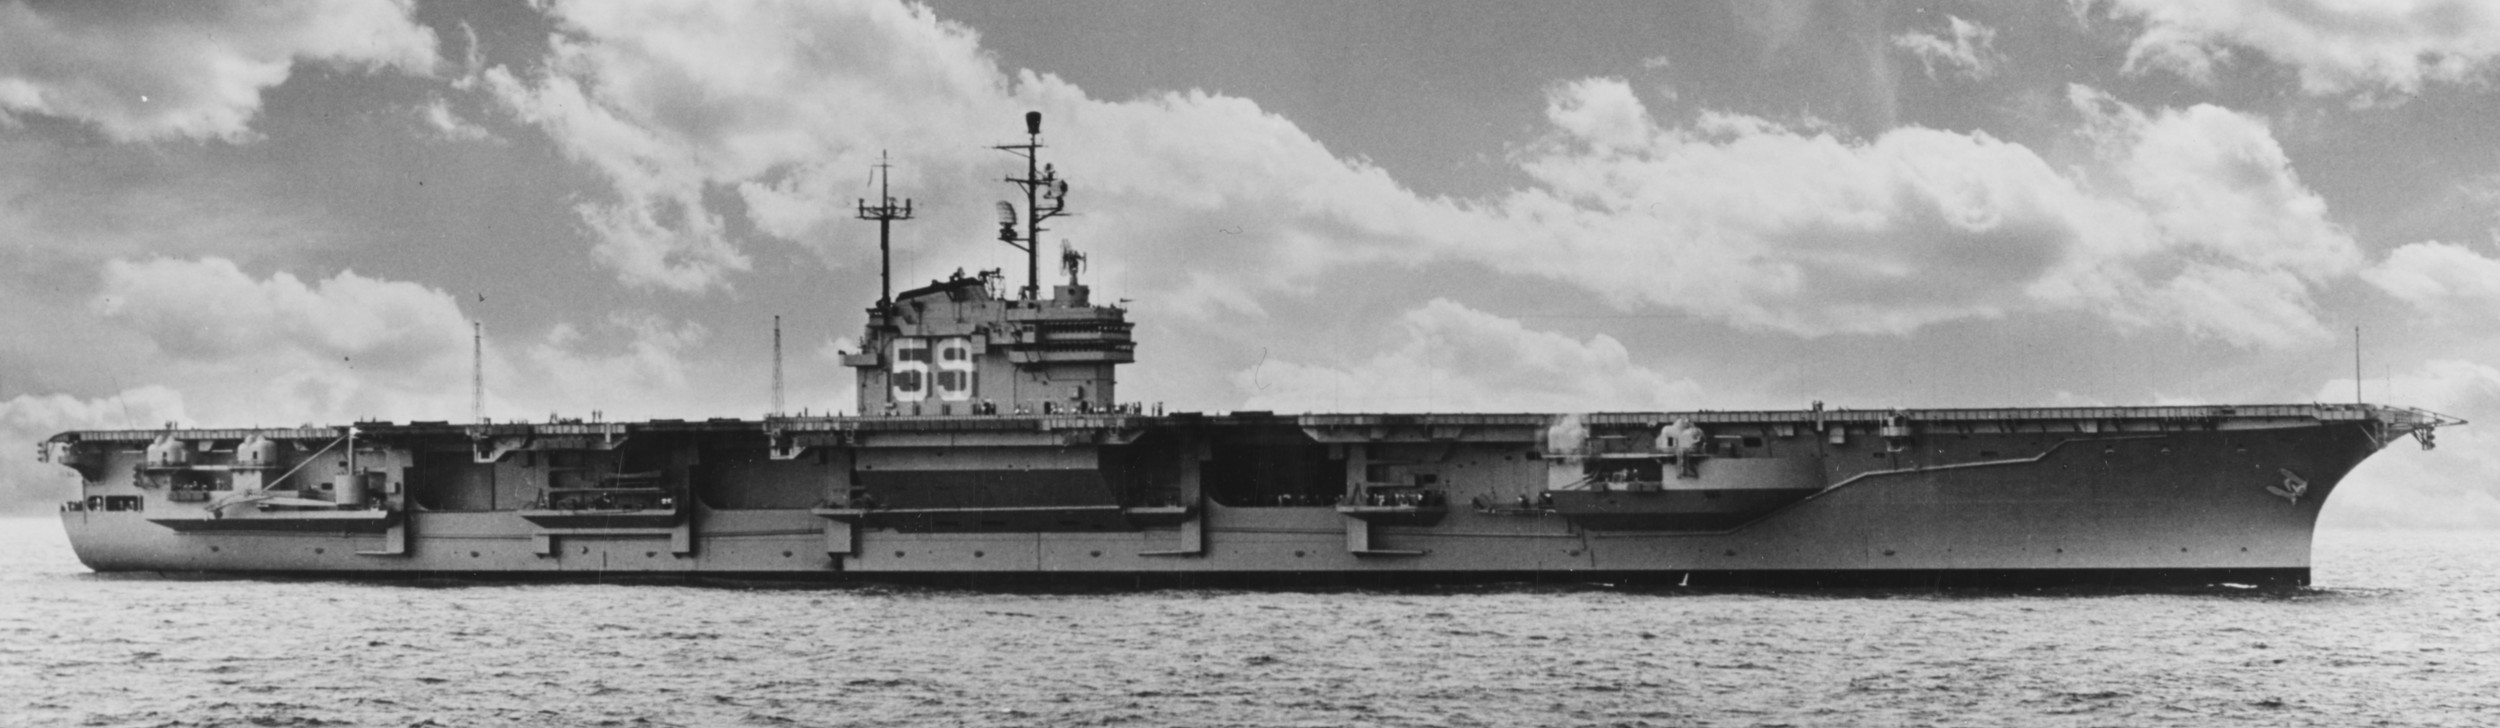 cv-59 uss forrestal aircraft carrier us navy 24